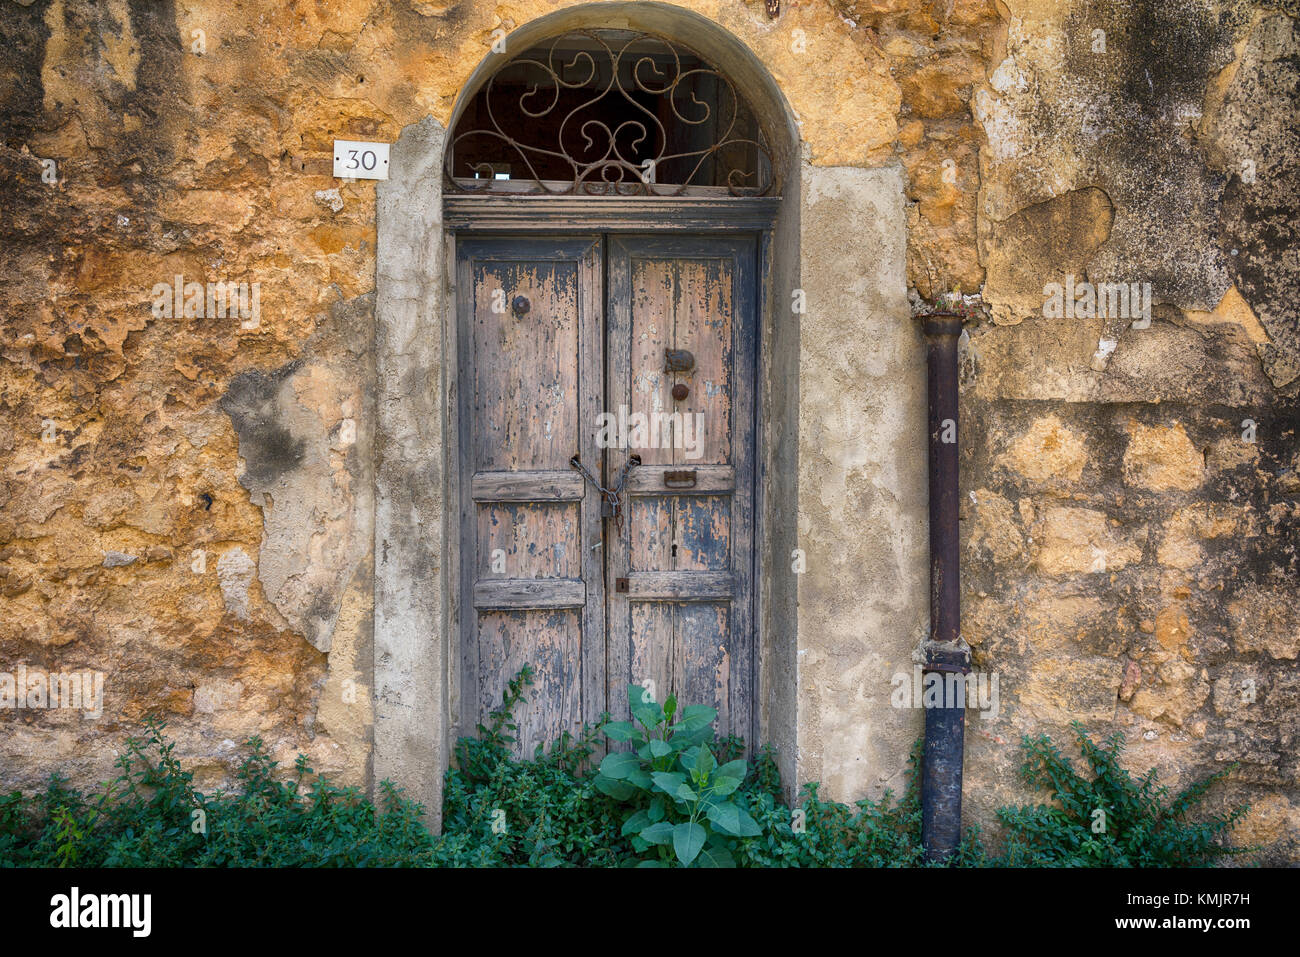 Nr. 30, Agrigento, Sizilien. tolle Farben und Texturen, diese alten Eingänge sind wunderschön. Stockfoto